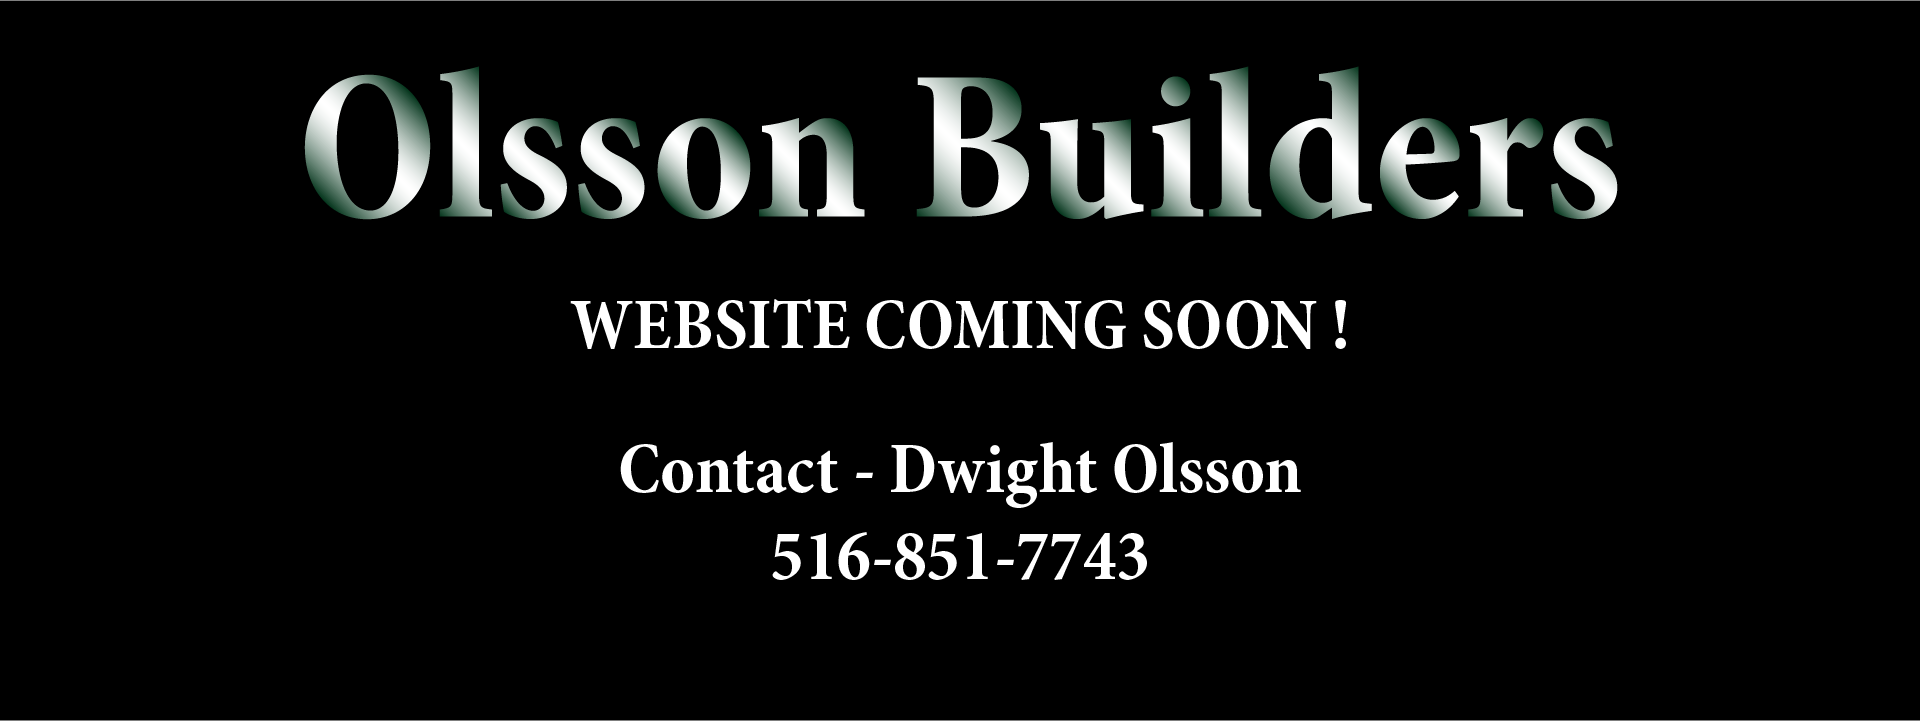 Olsson Builders